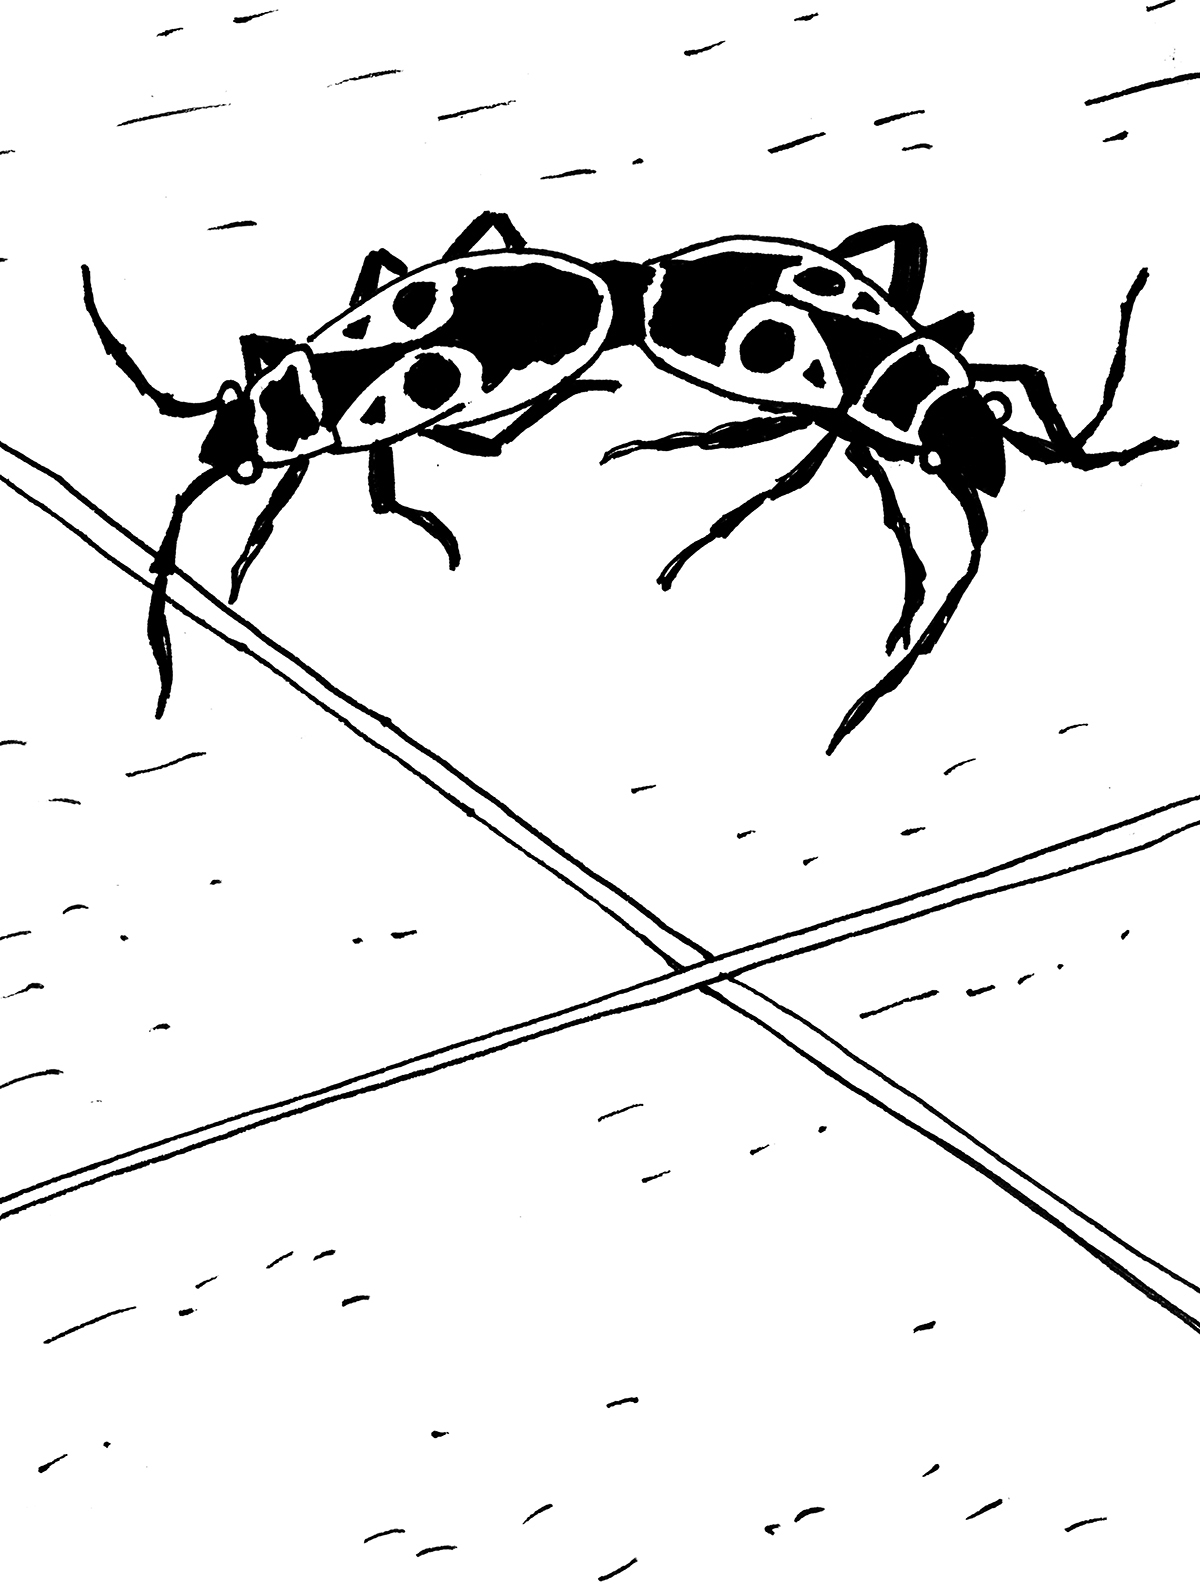 Dwa owady złączone odwłokami siedzące na płycie chodnikowej